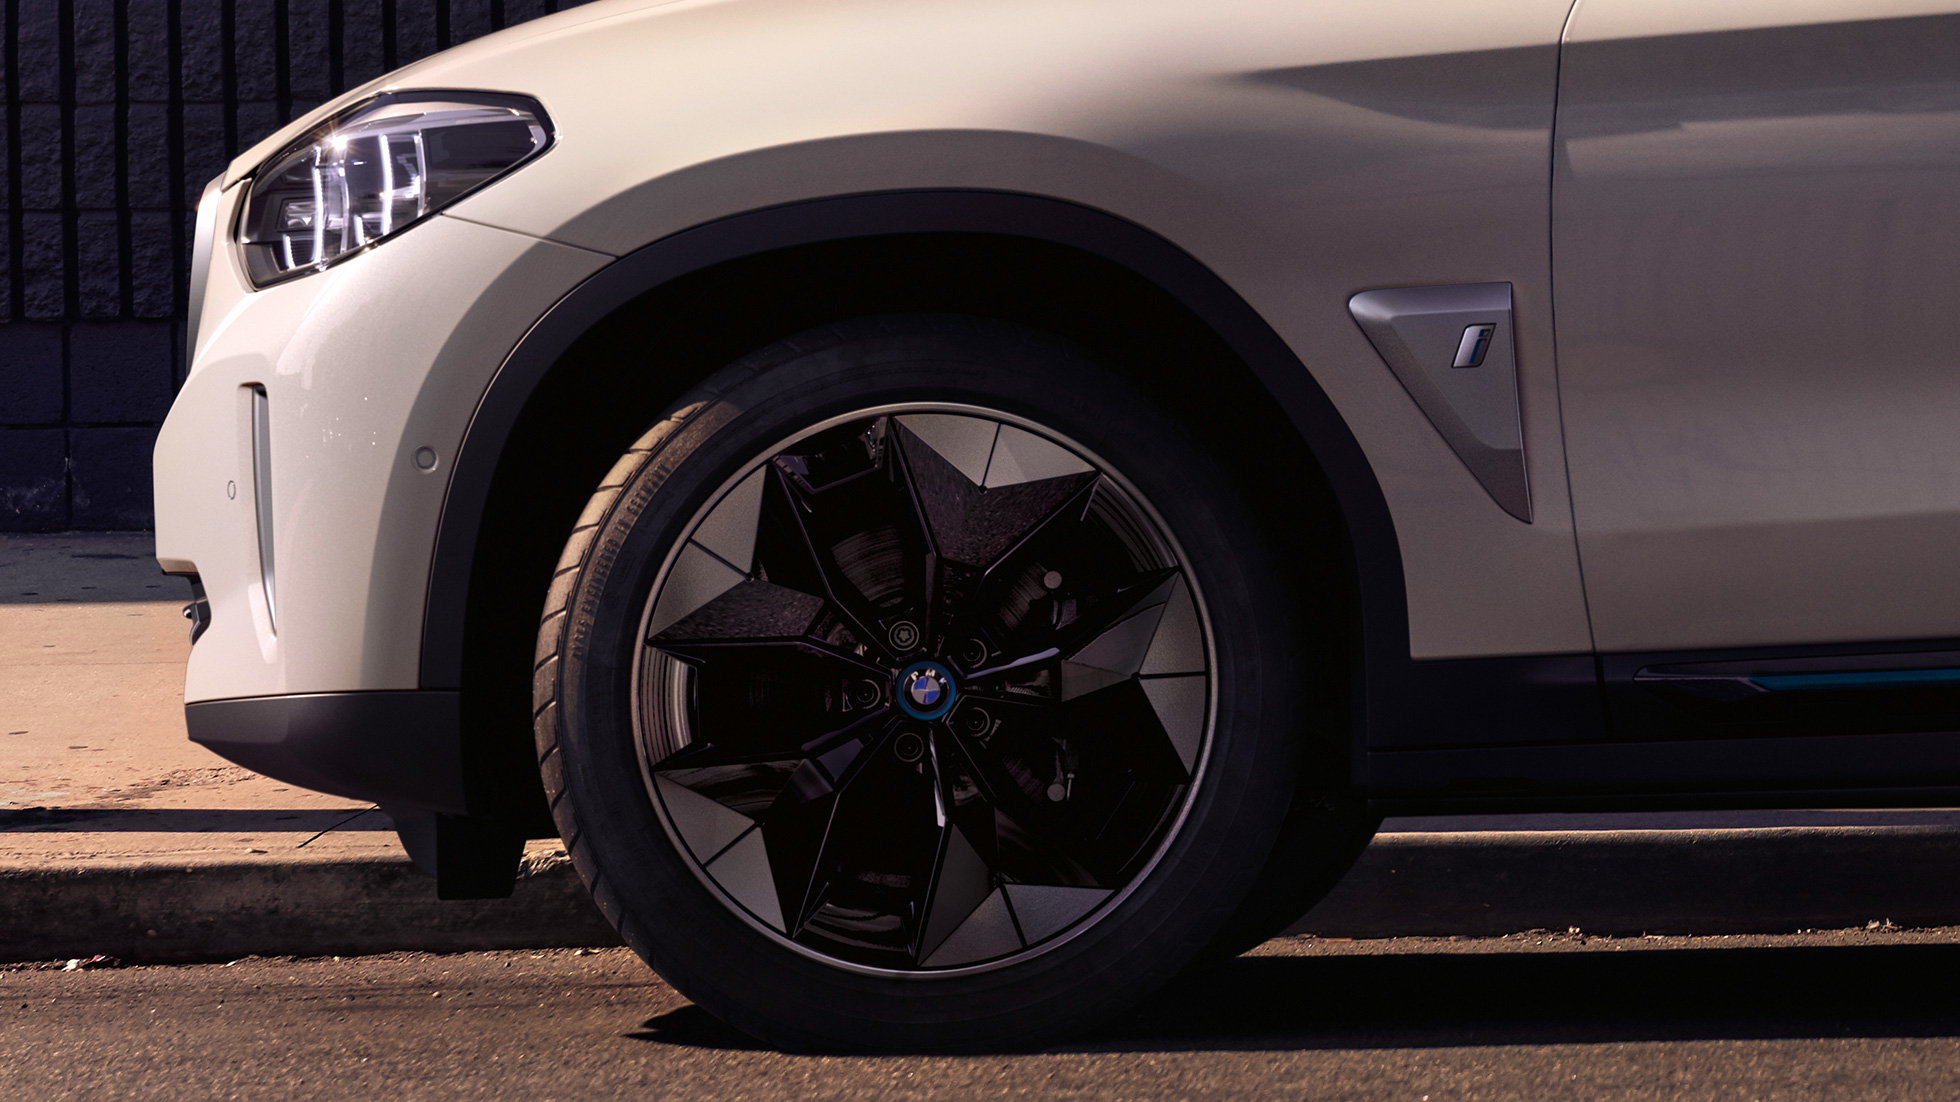 Noile modele ELECTRICE de la BMW - dotate cu Jante aerodinamice!